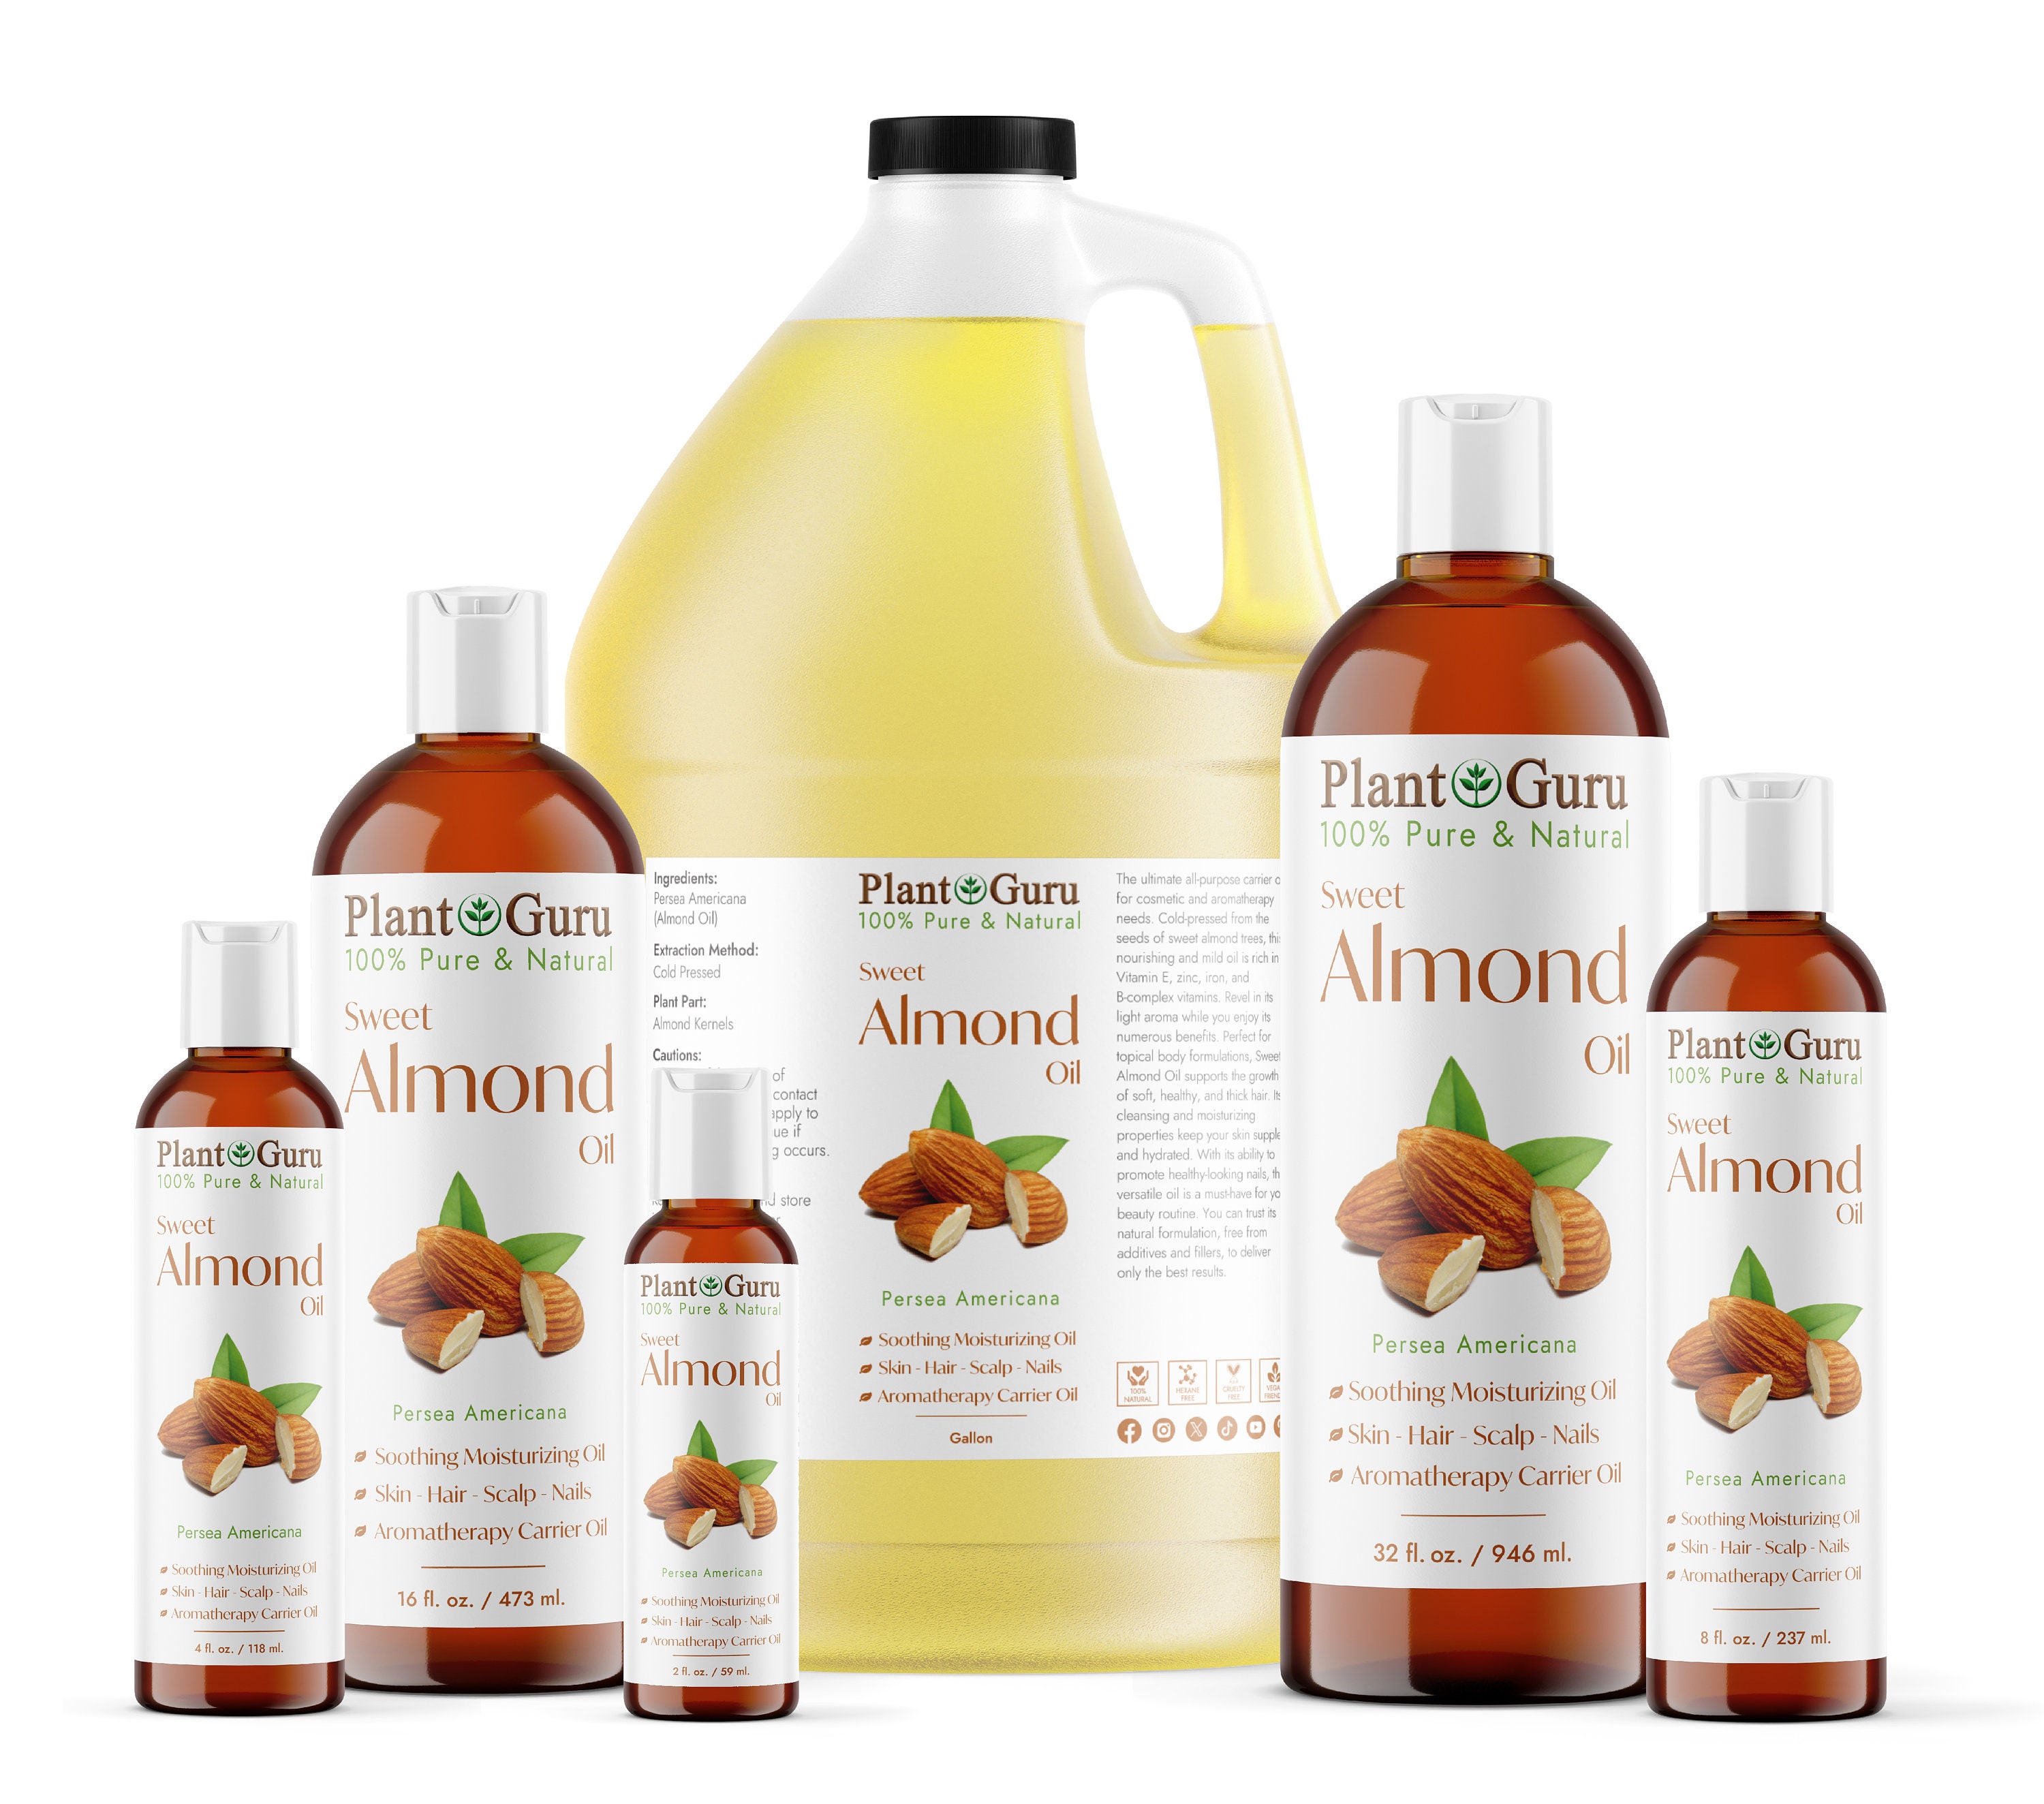 Vanilla Buttercream Dry Body Oil Spray, Essential Oils, Natural Fragrance,  Large 4 Oz. Aluminum Bottle 